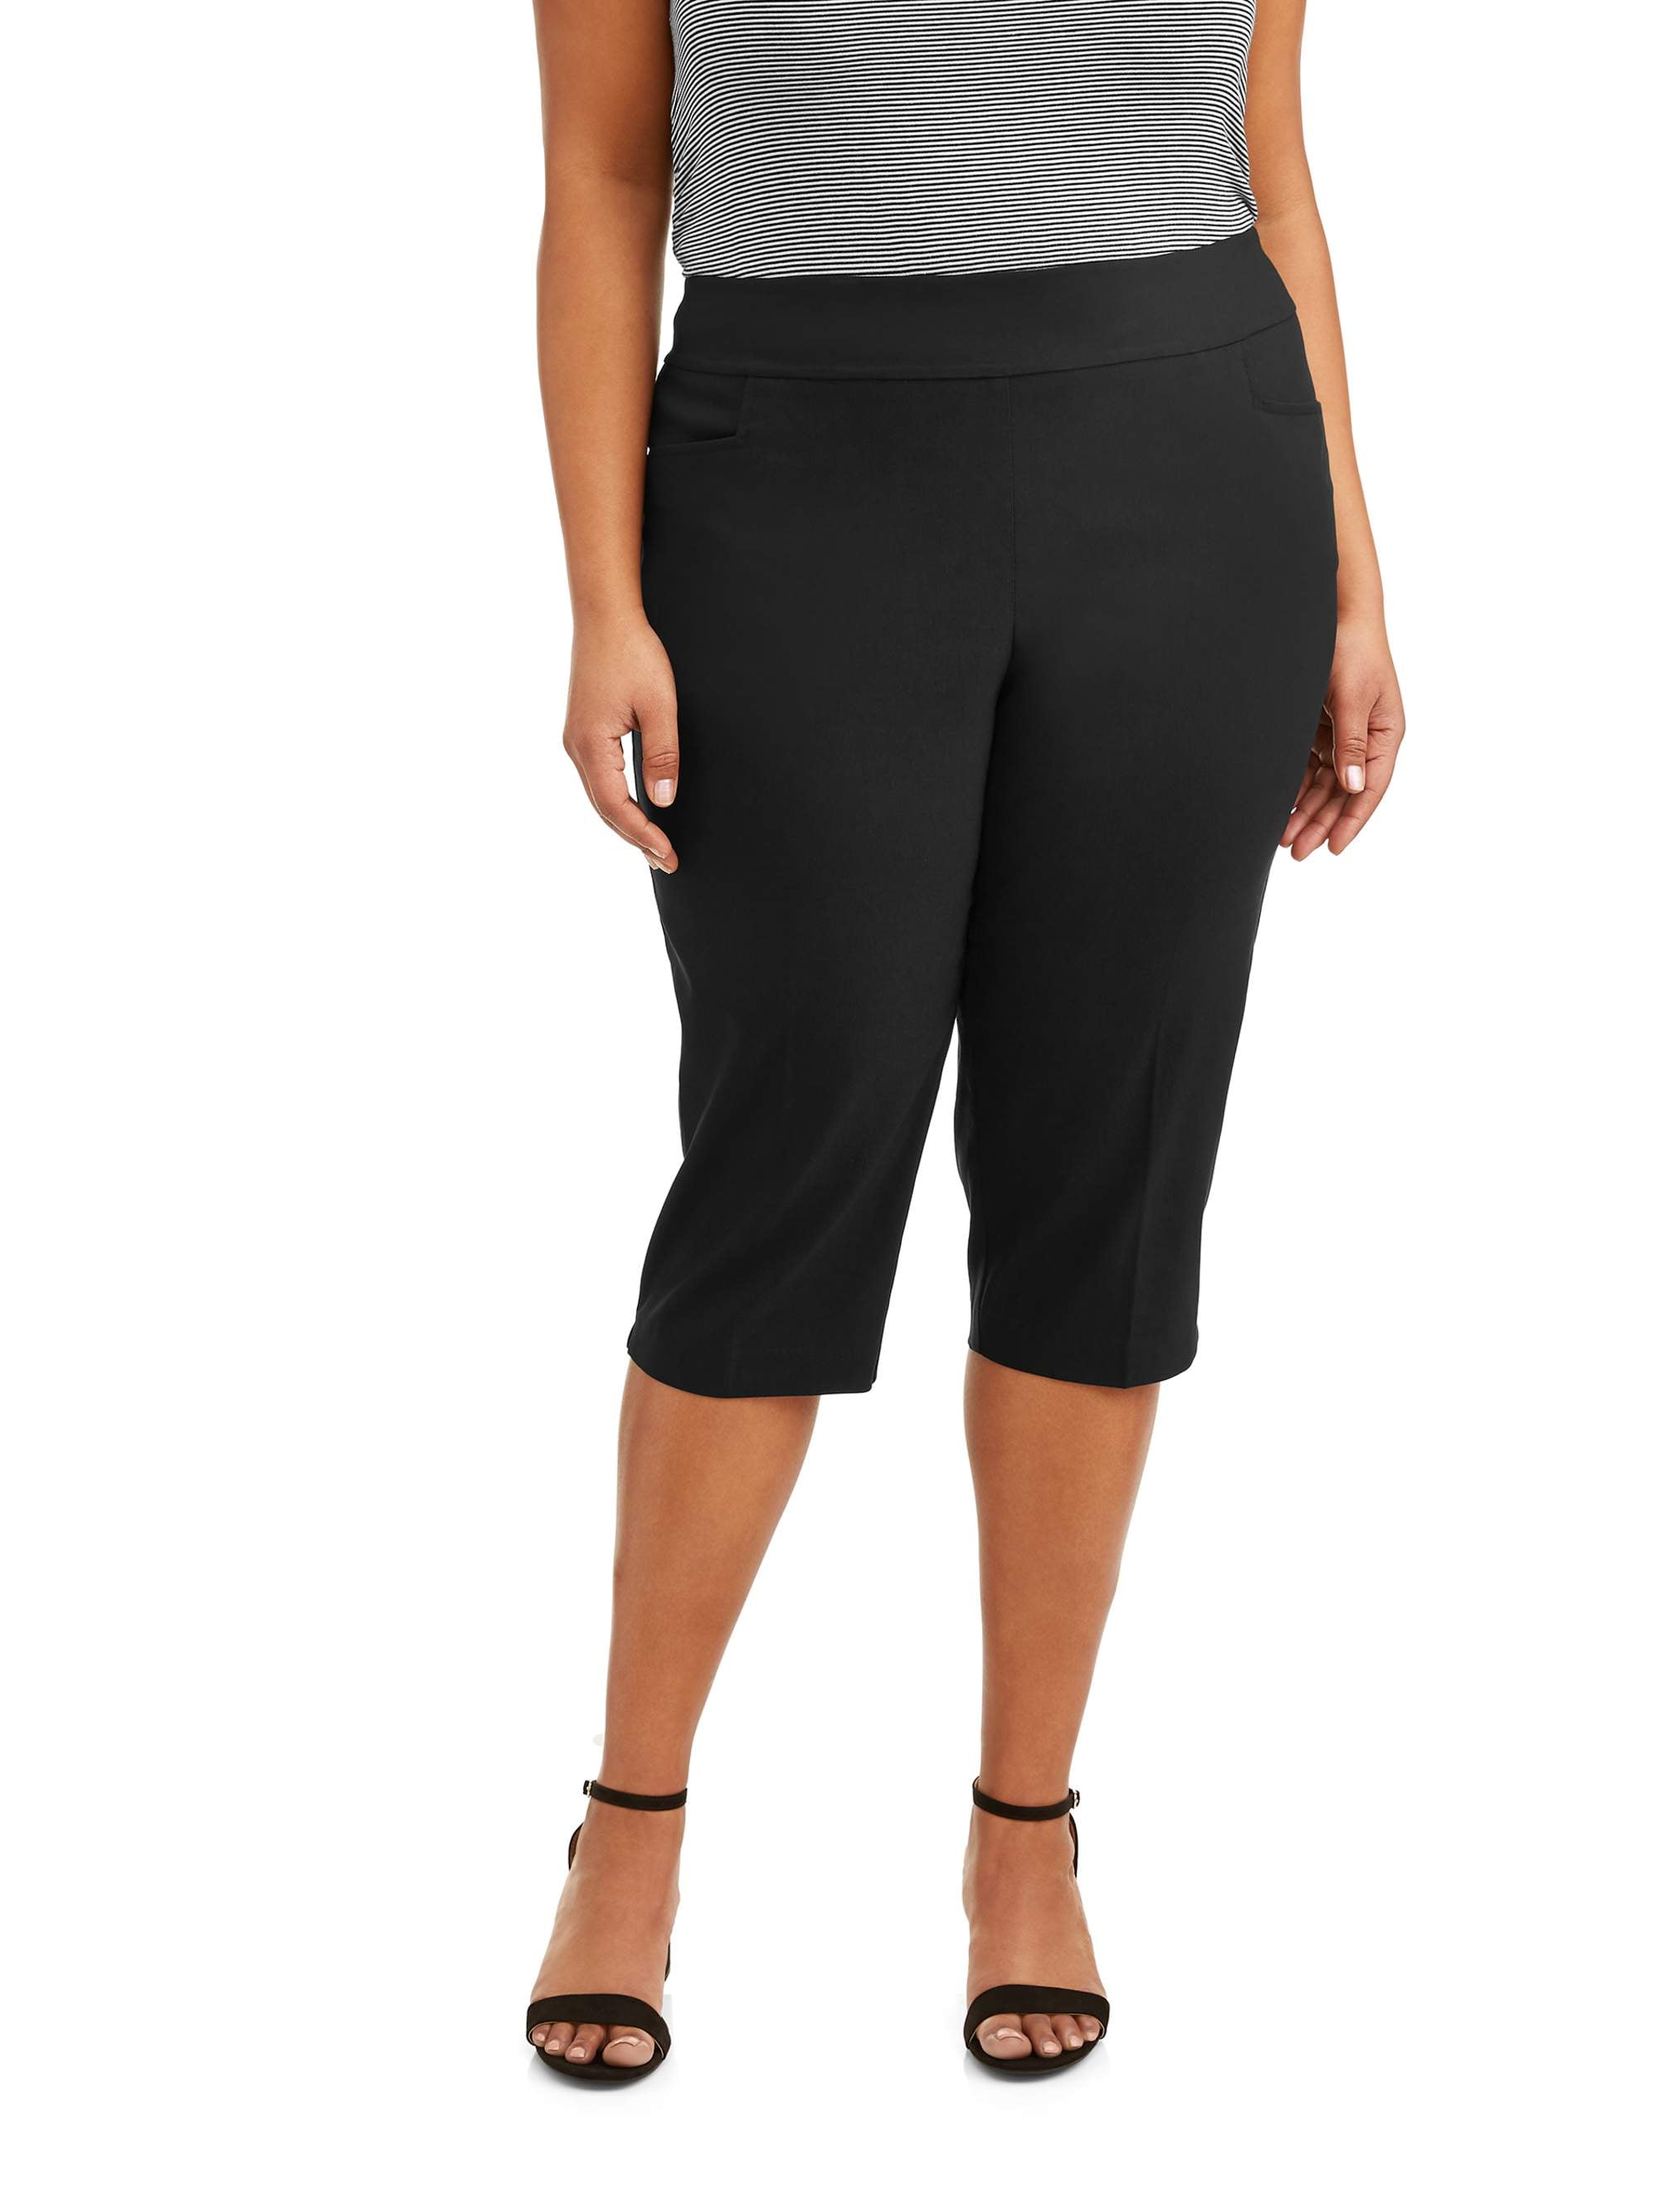 Womens Plus Size Super Stretch Black Lace Capri